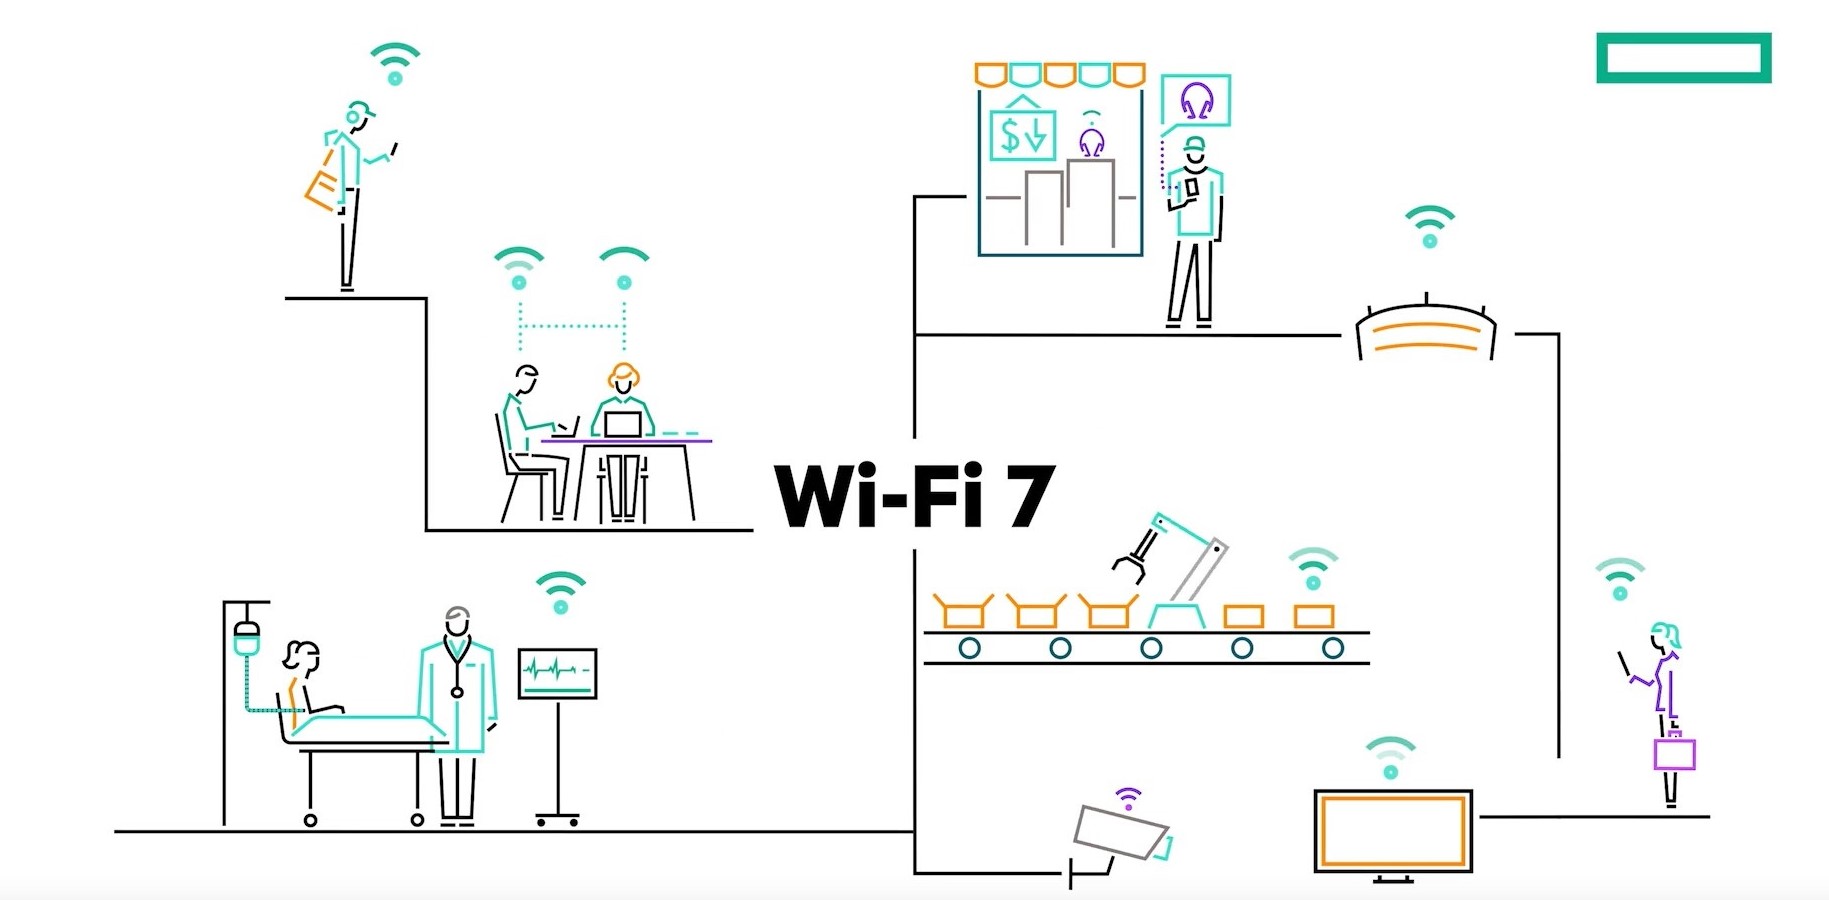 2 wifi7 HPE Aruba Networking เปิดตัวอุปกรณ์กระจายสัญญาณ Wi Fi 7 ประสิทธิภาพสูง เพิ่มความปลอดภัยให้องค์กรช่วยแก้ปัญหาความท้าทายของ AI และ IoT